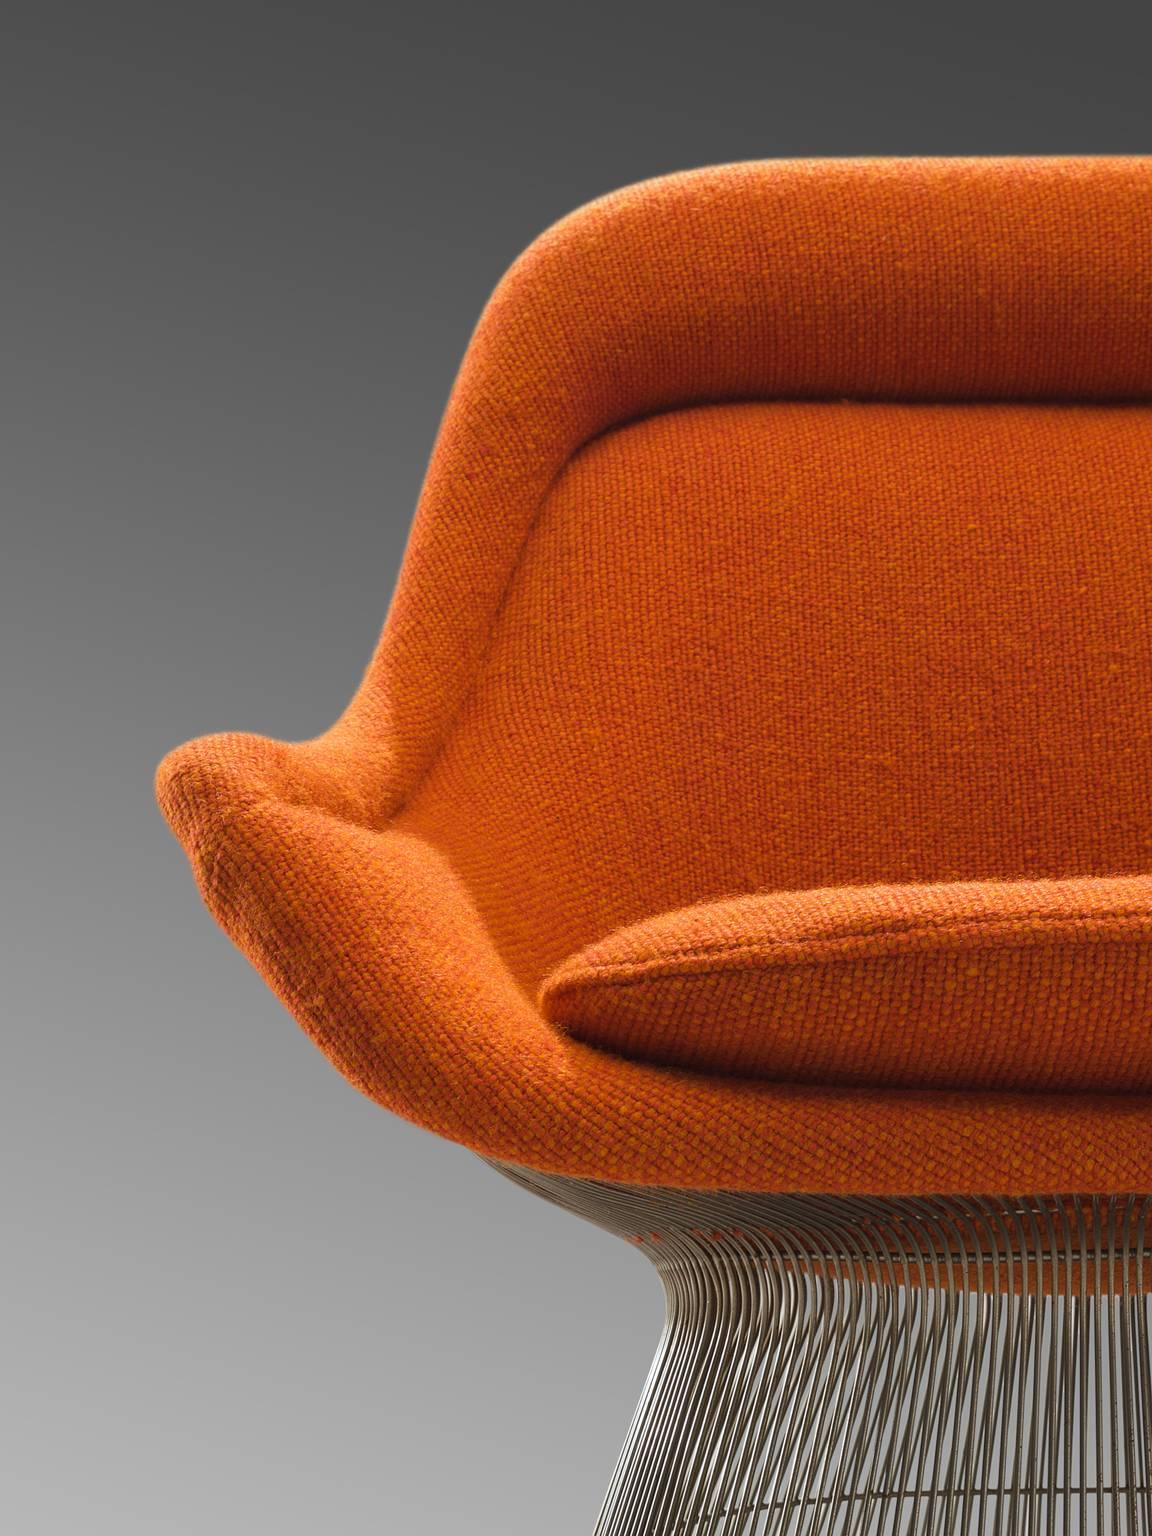 Warren Platner Easy Chair in Original Orange Fabric 1